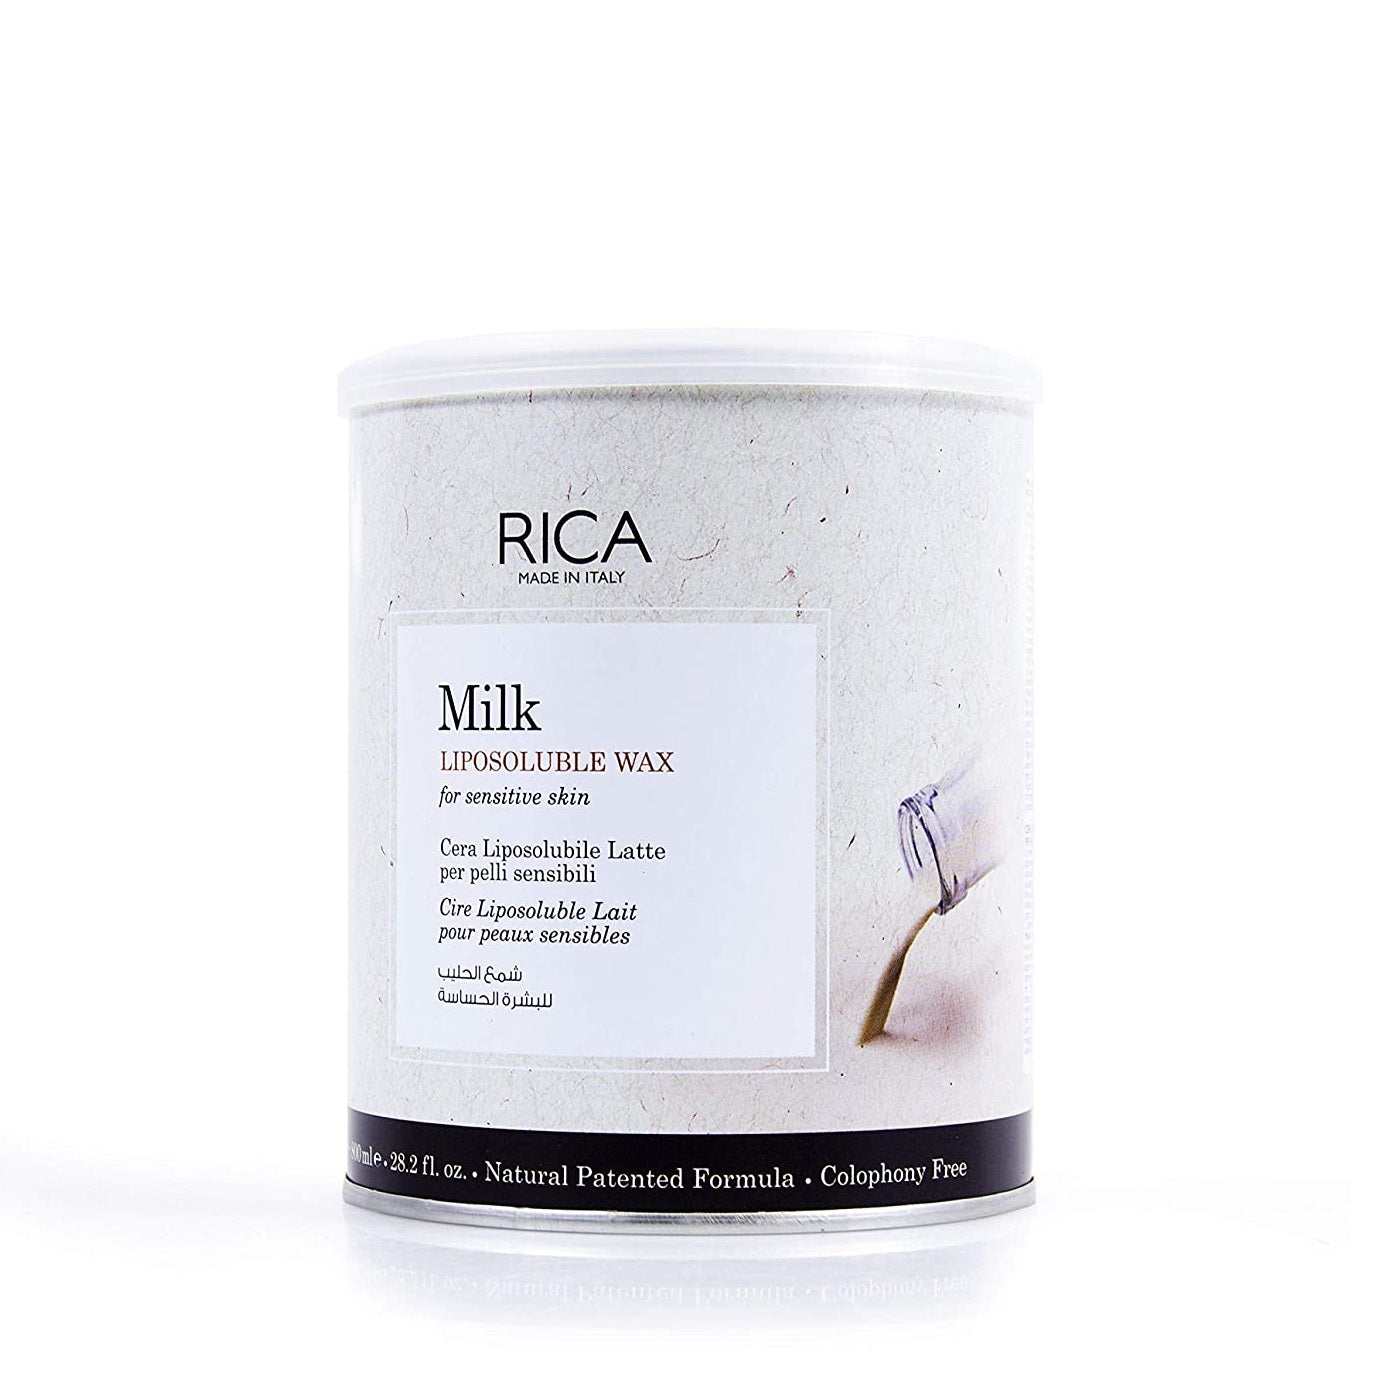 Rica Wax Liposoluble Milk Senstive Skin 28.2Oz/800Ml